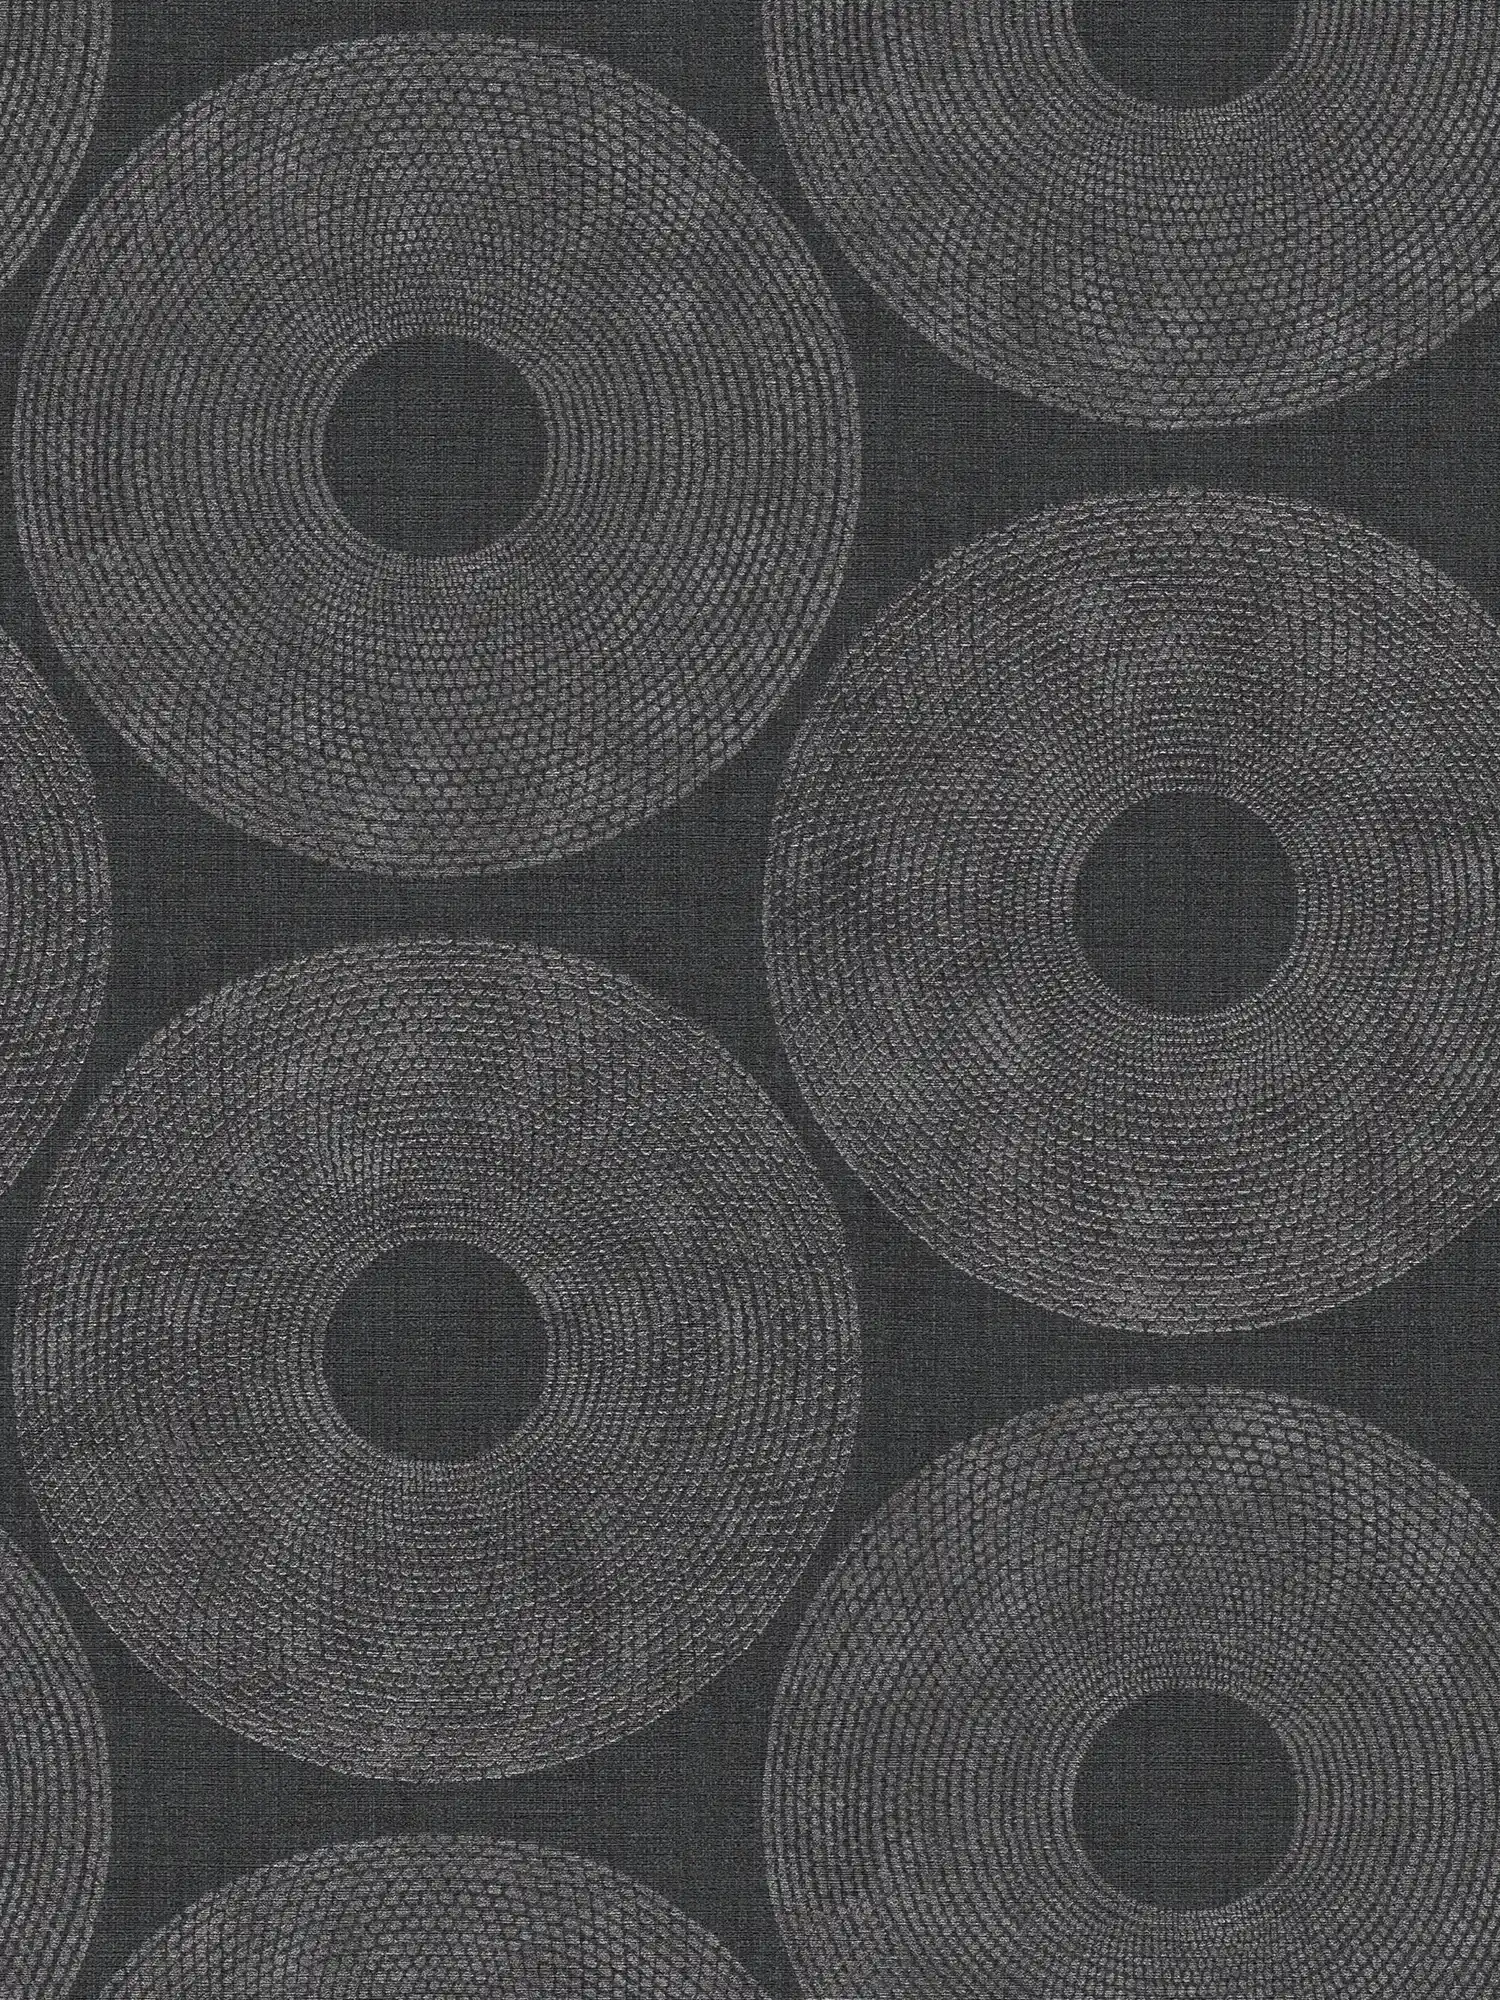         Ethno behang cirkels met structuurdesign - grijs, metallic
    